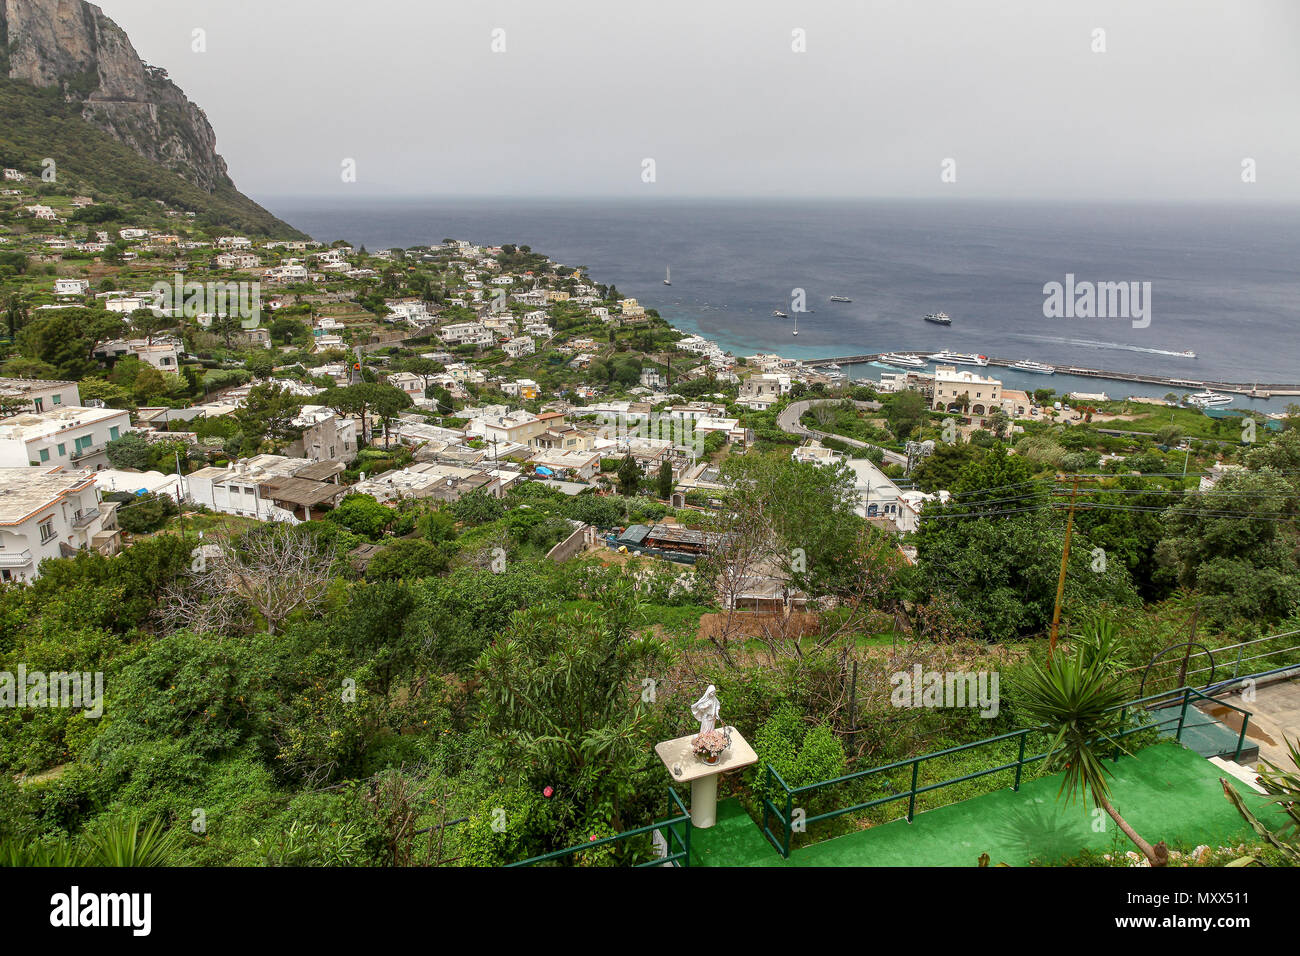 La vista dalla stazione della funicolare che si affaccia sulla baia dell'isola di Capri, Campania, Italia Foto Stock